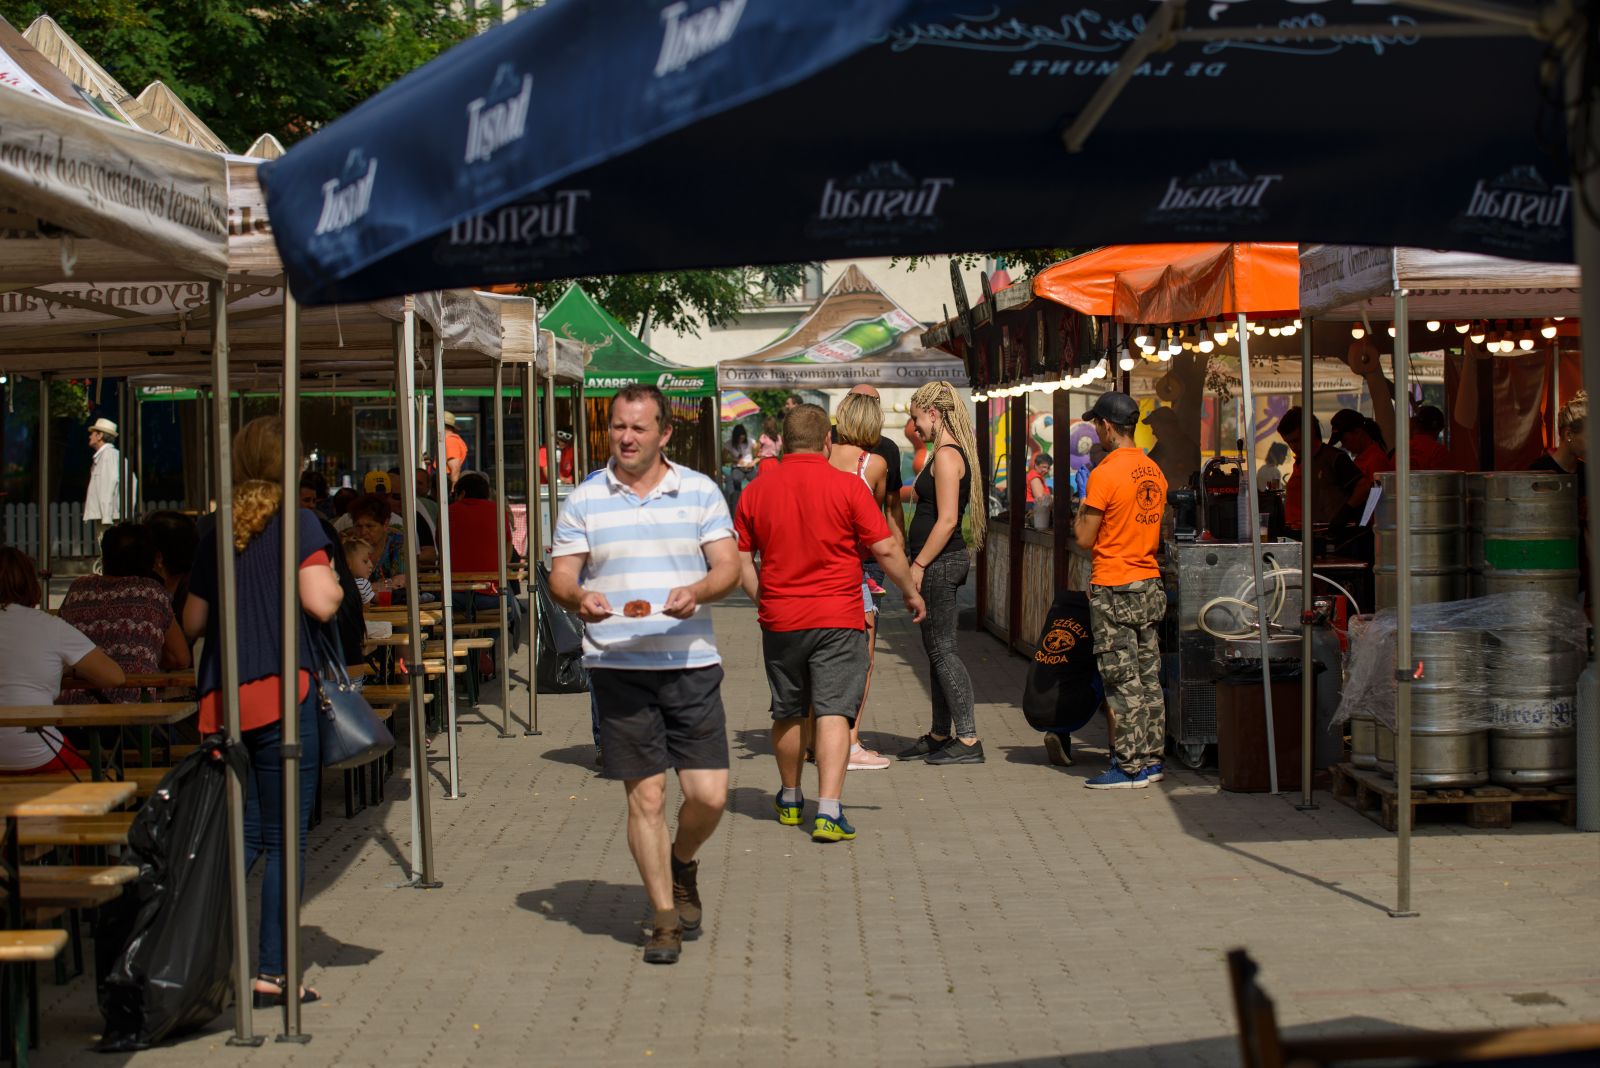 Több éve visszatérő rendezvény a Székely Ízek Gasztronómiai Fesztivál. A fesztivál keretében árusítók igyekeznek egy kicsit kibújni a megszokott „flekken-miccs” bűvkörből és bemutatni az erdélyi gasztronómia sokszínűségét.